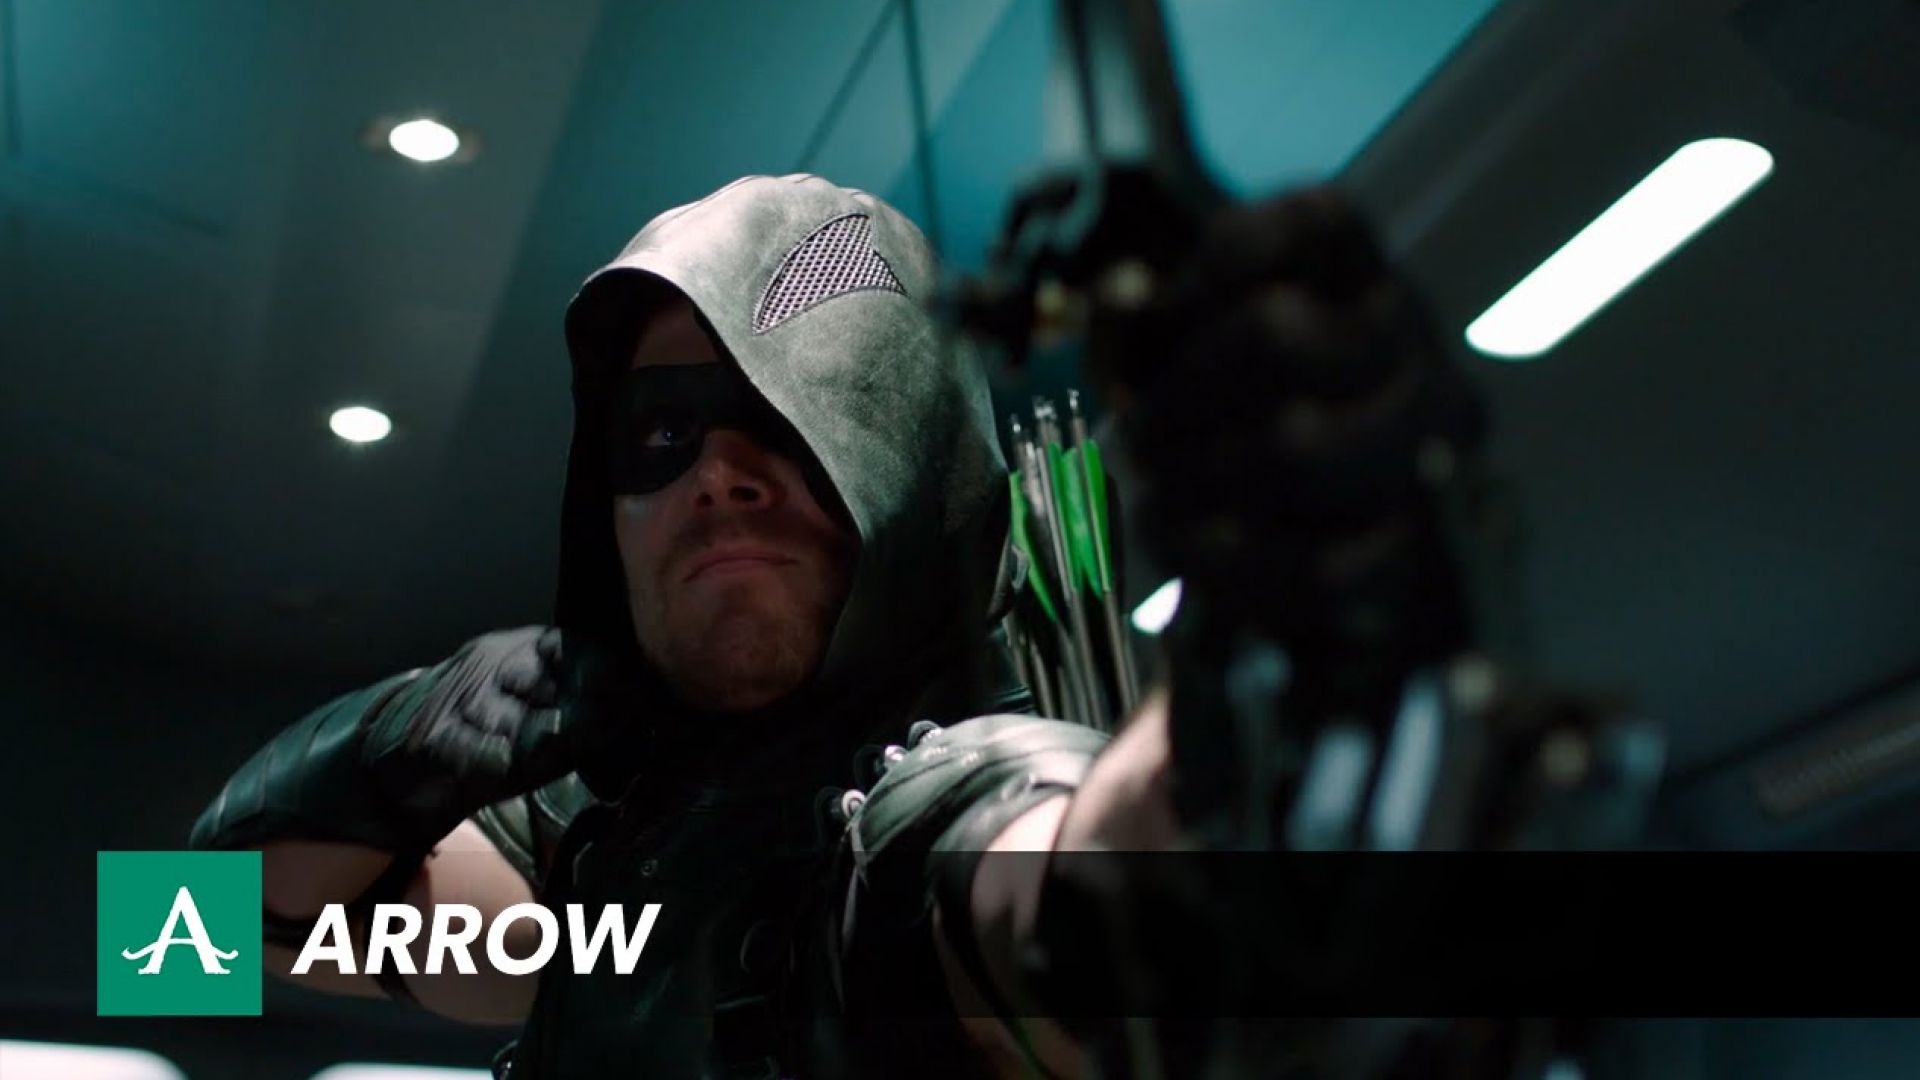 Embrace Darkness - Extended Arrow Season 4 Spot. Returns Oct